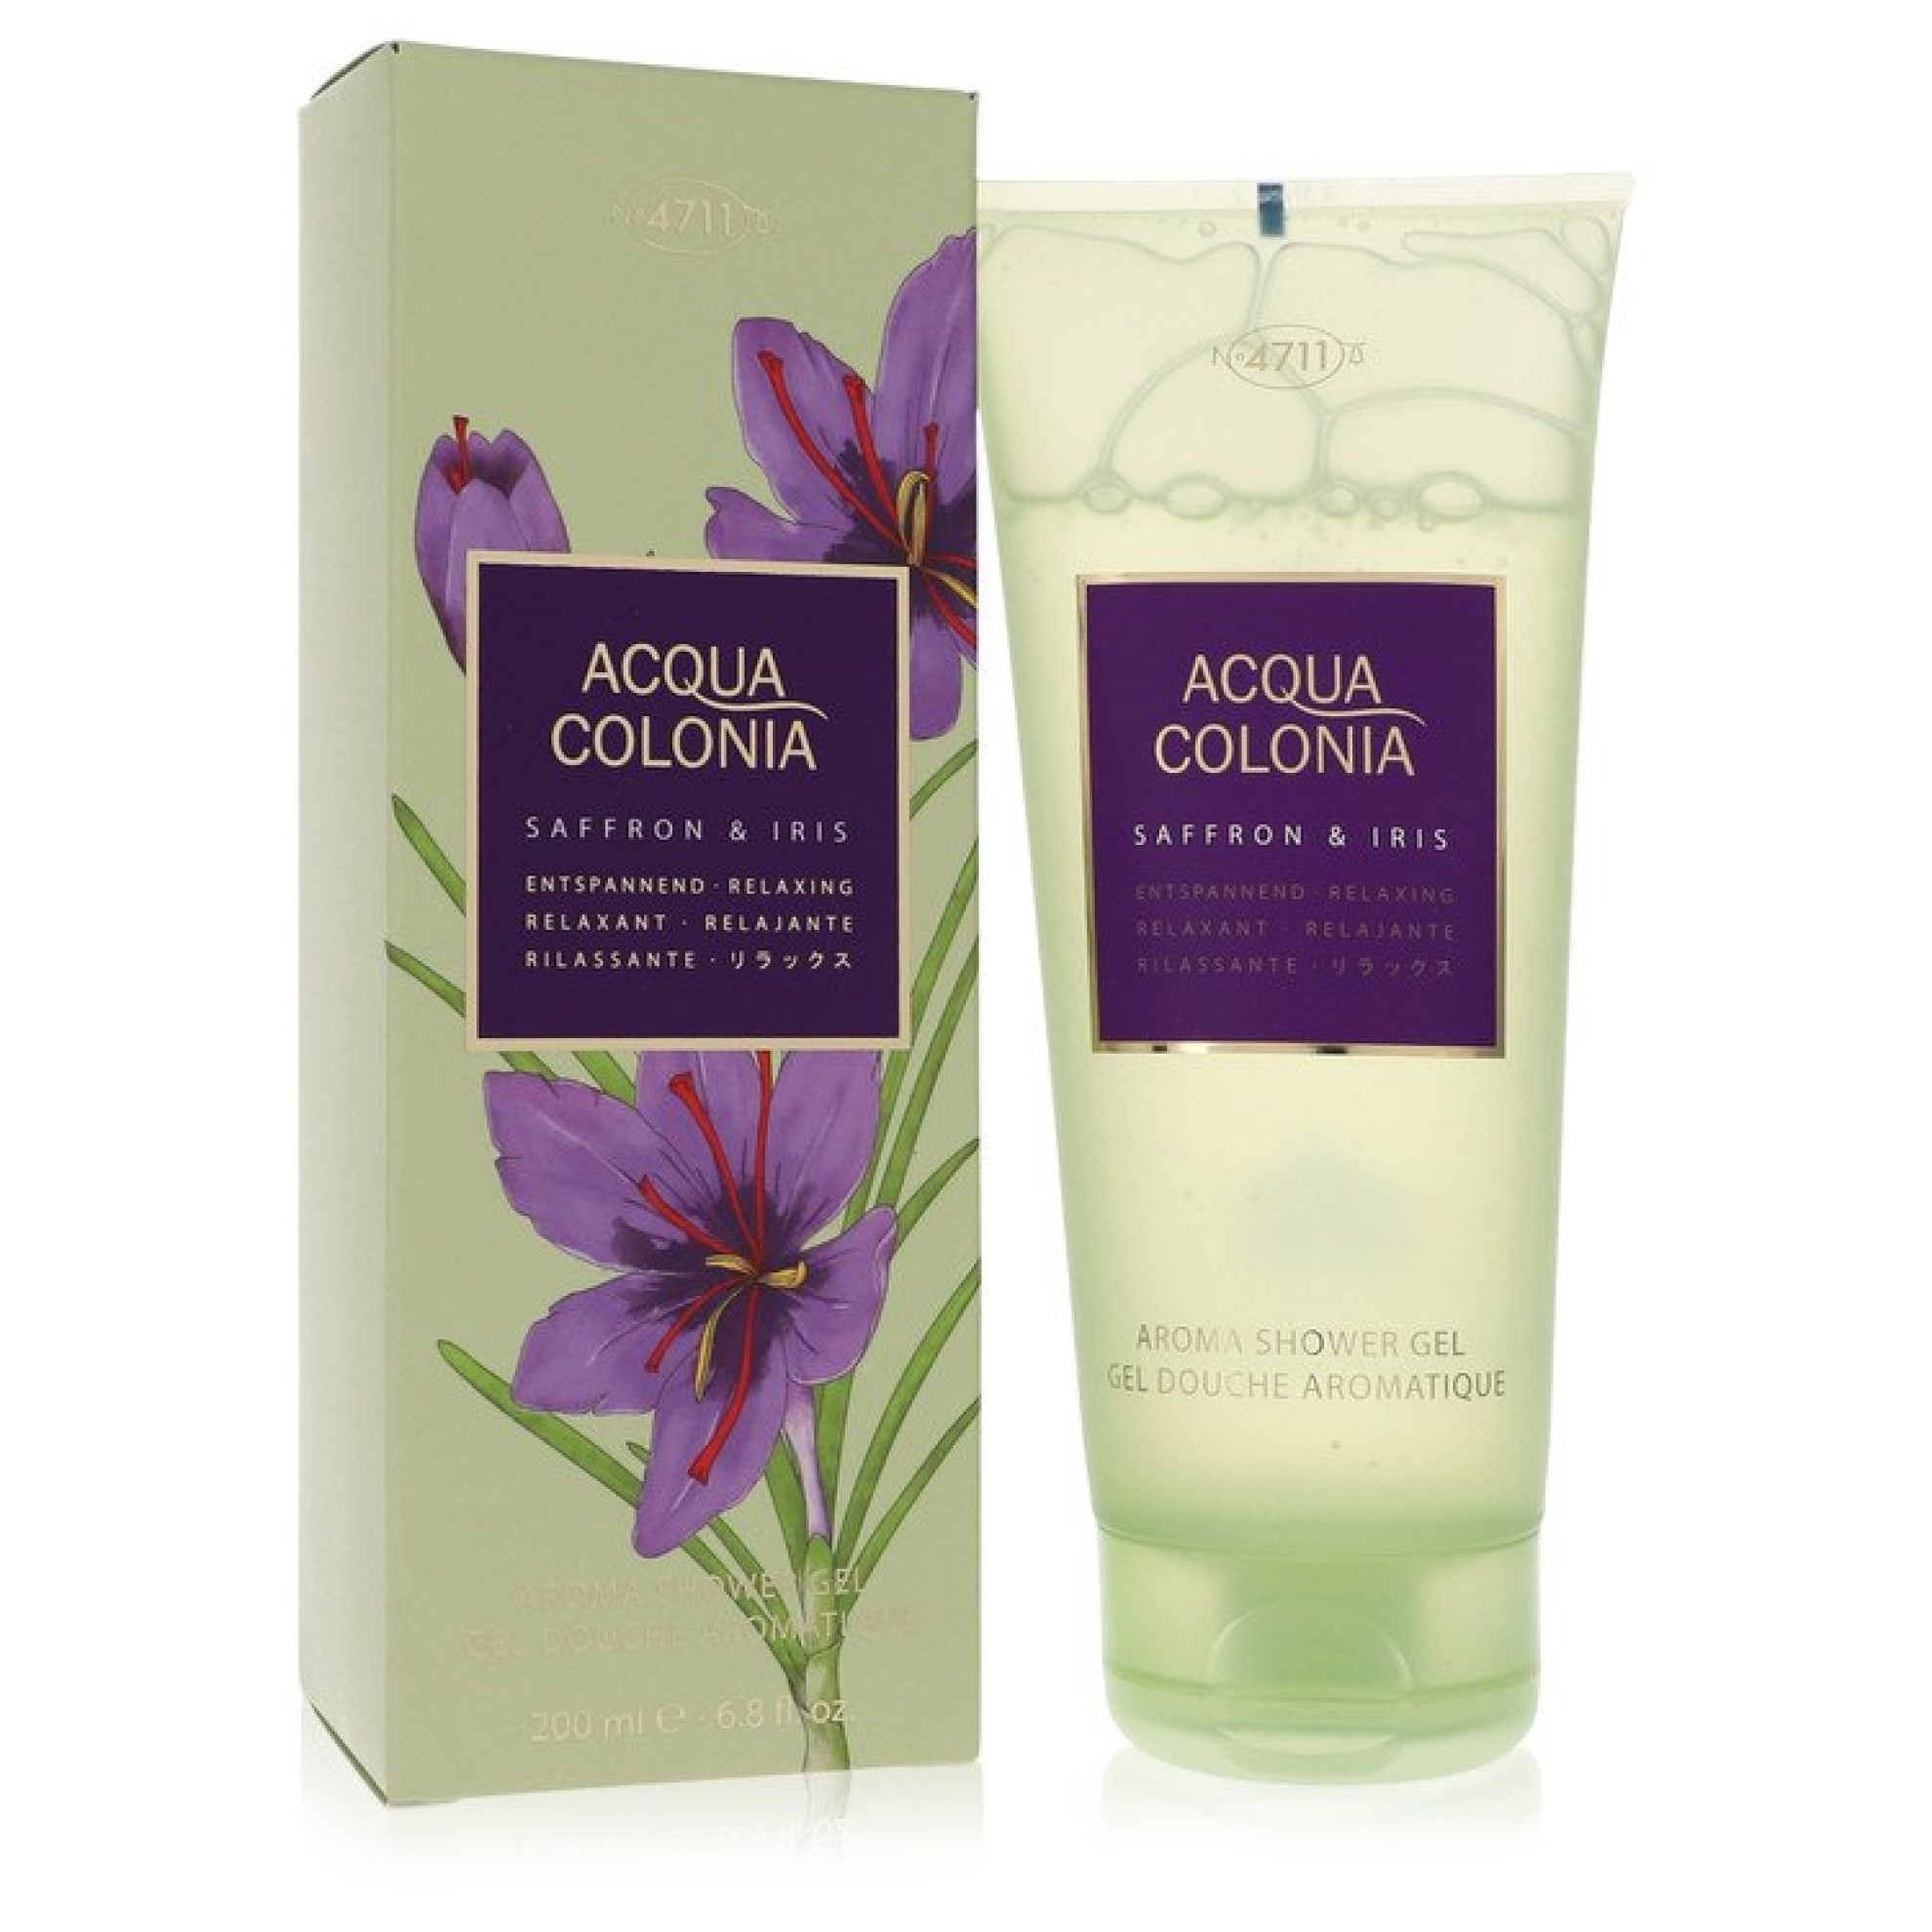 Image of 4711 Acqua Colonia Saffron & Iris Shower Gel 201 ml von XXL-Parfum.ch